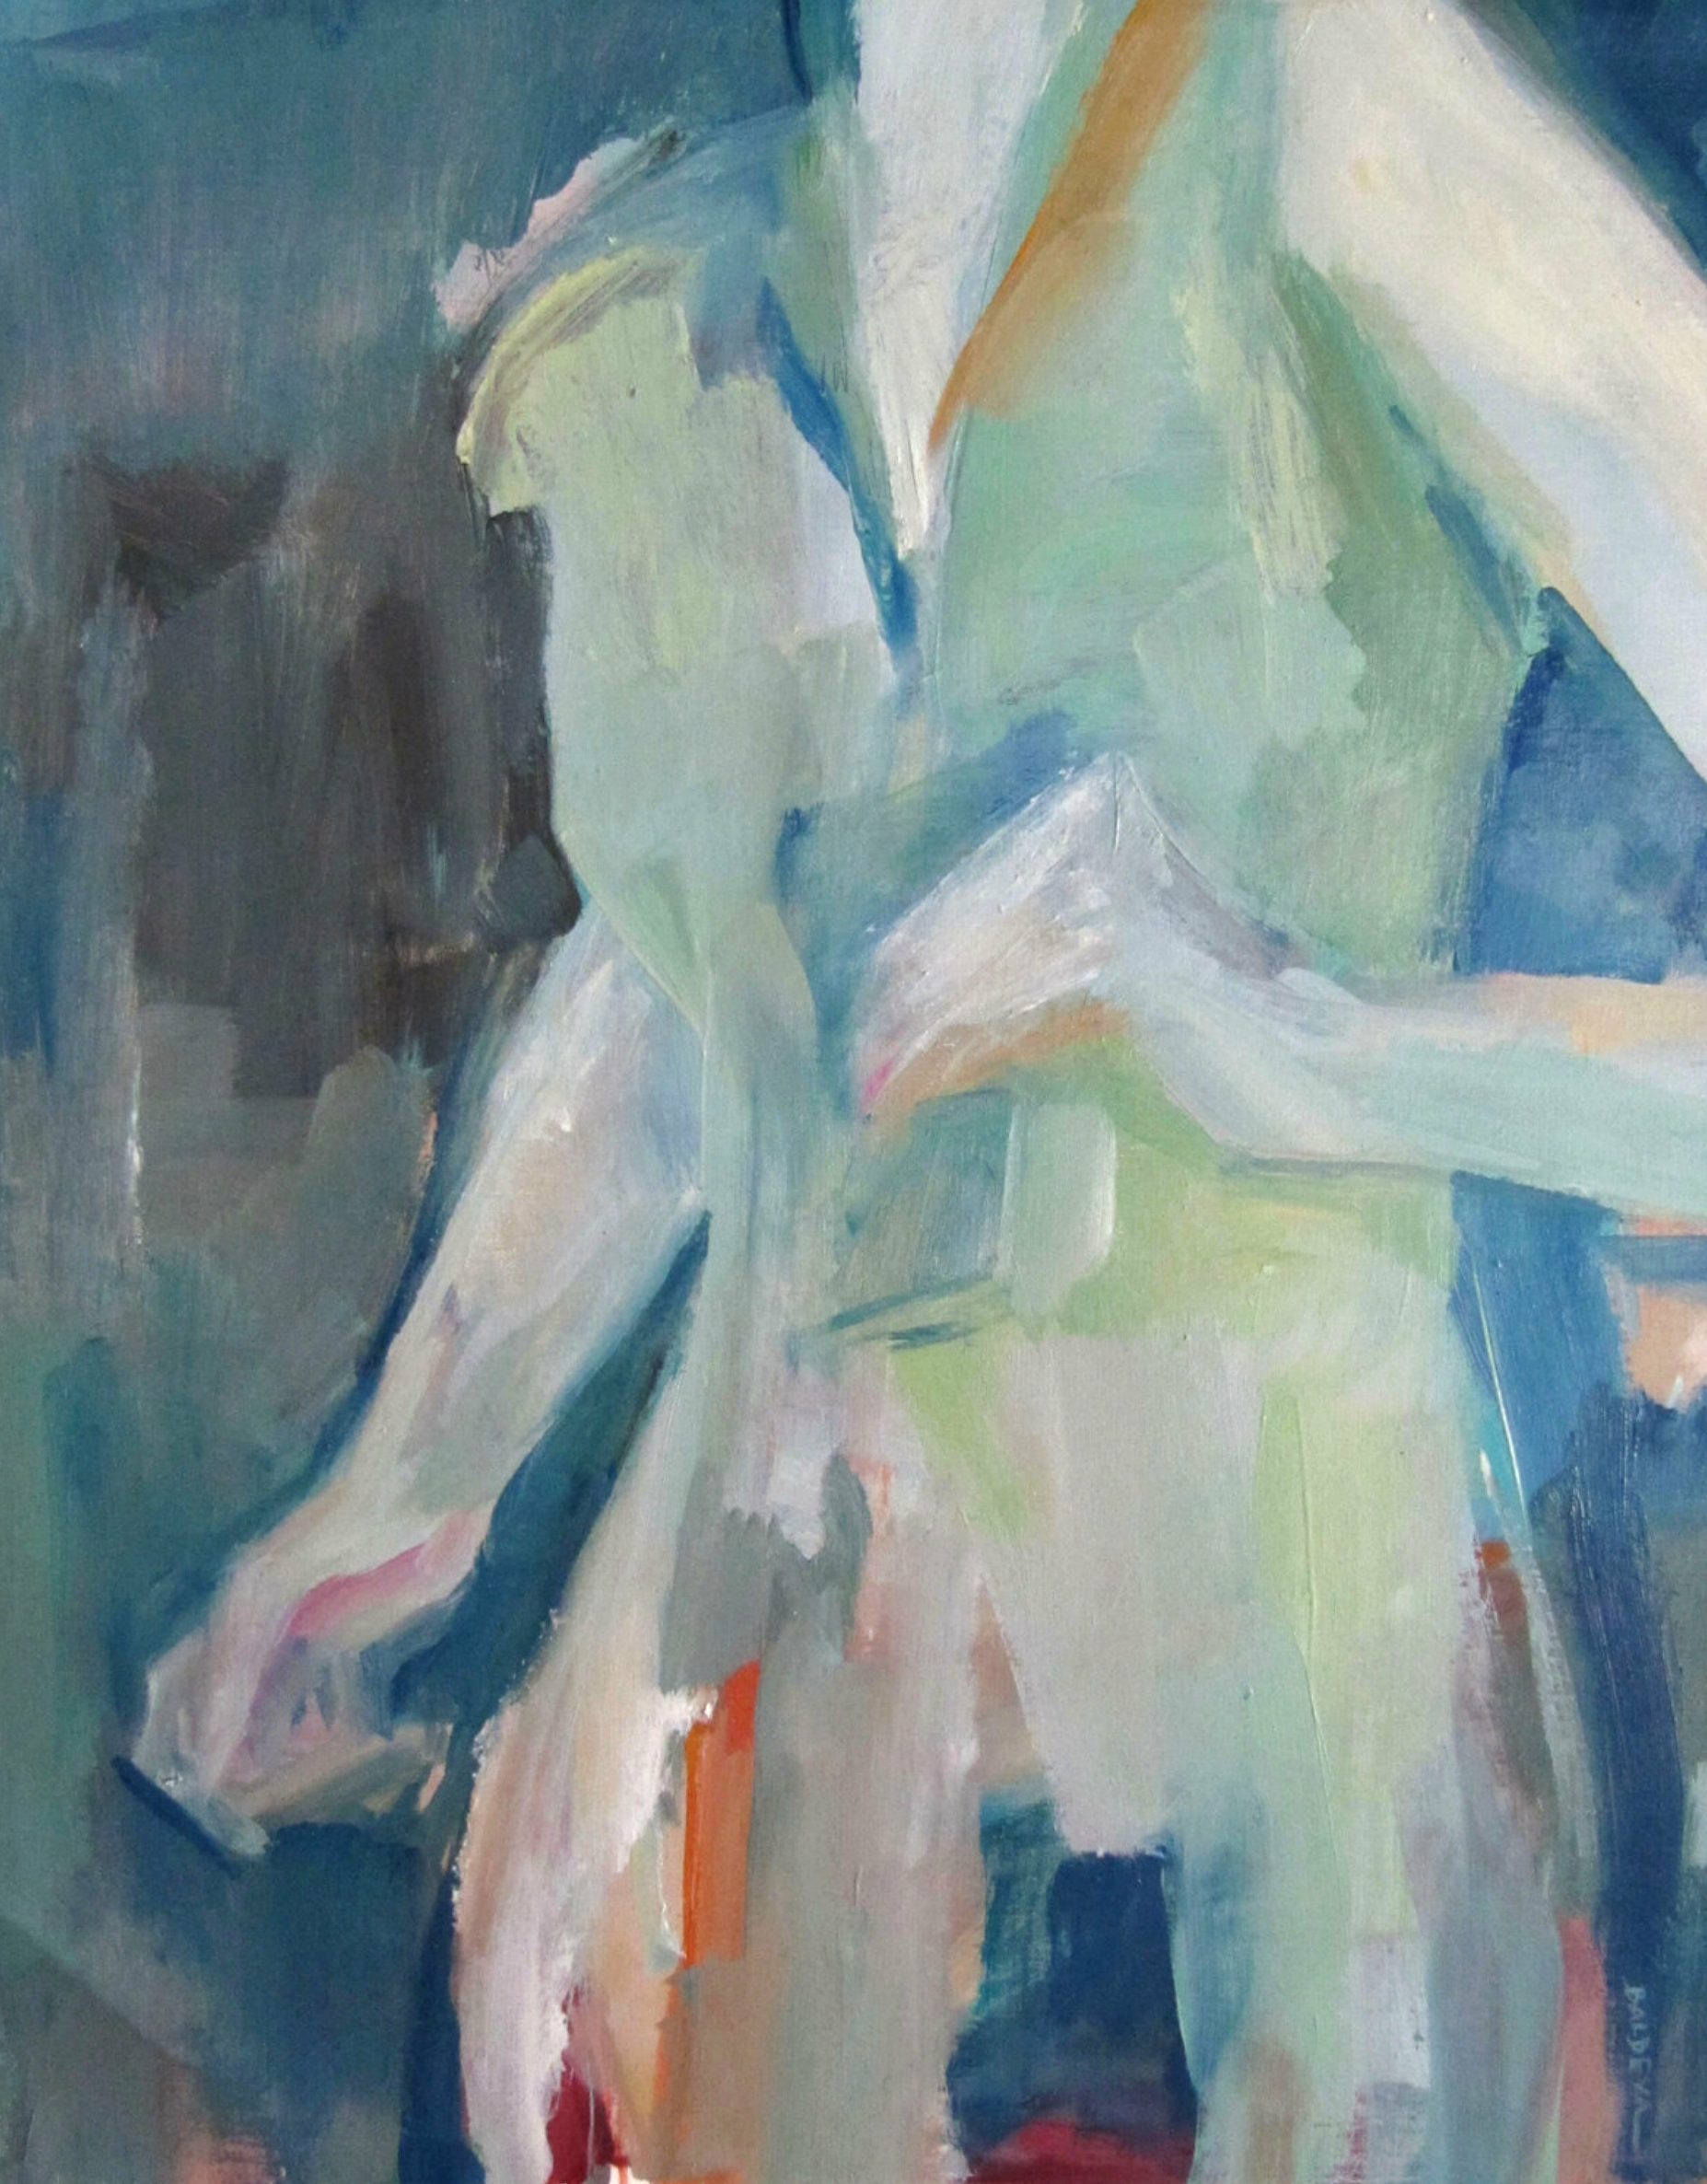 Cource" de Sylvia Baldeva montre une peinture à l'huile semi-abstraite.  Gros plan sur une femme qui court une scène de vie.